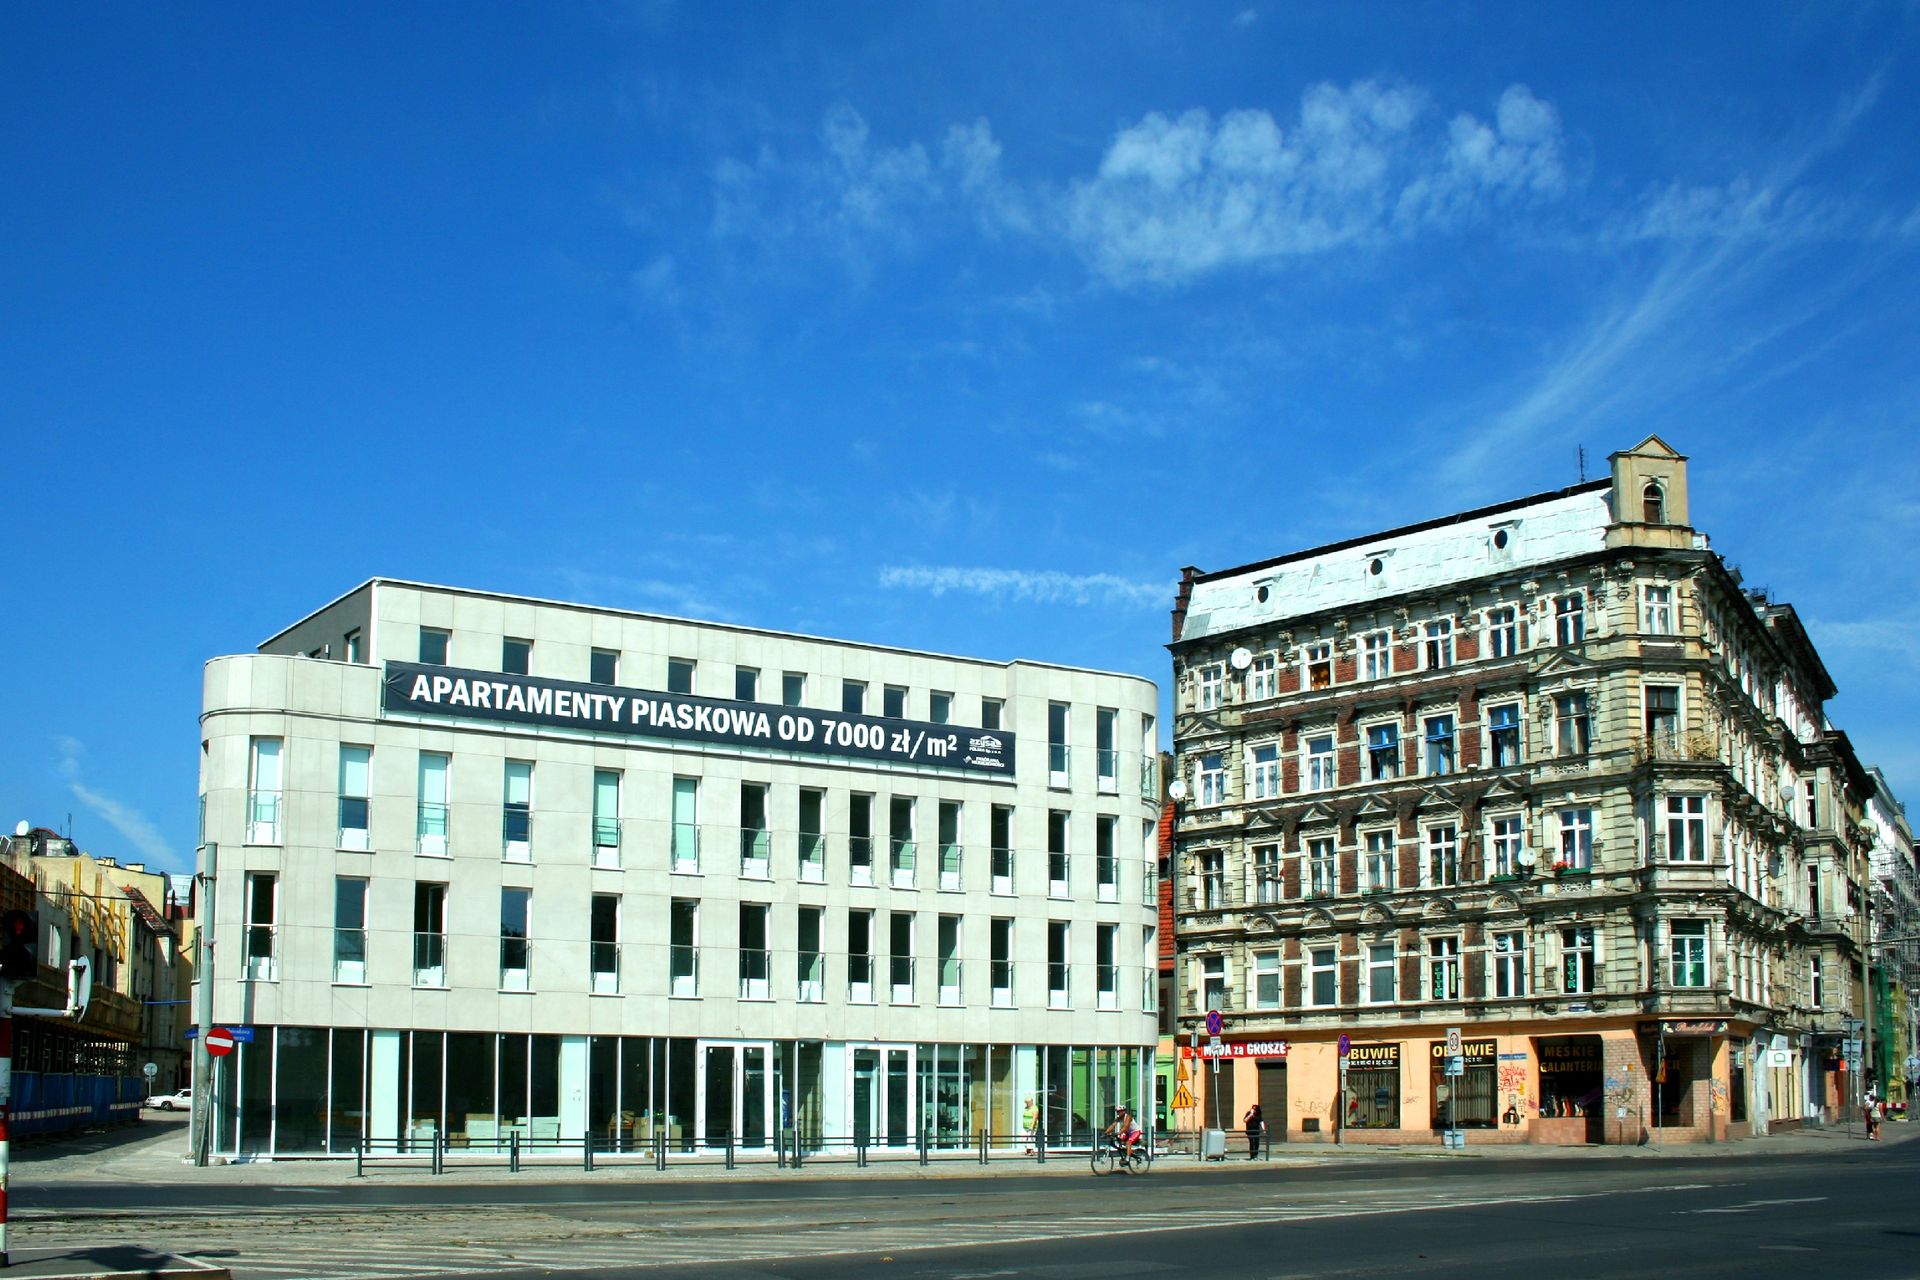  Wrocław Apartamenty Piaskowa